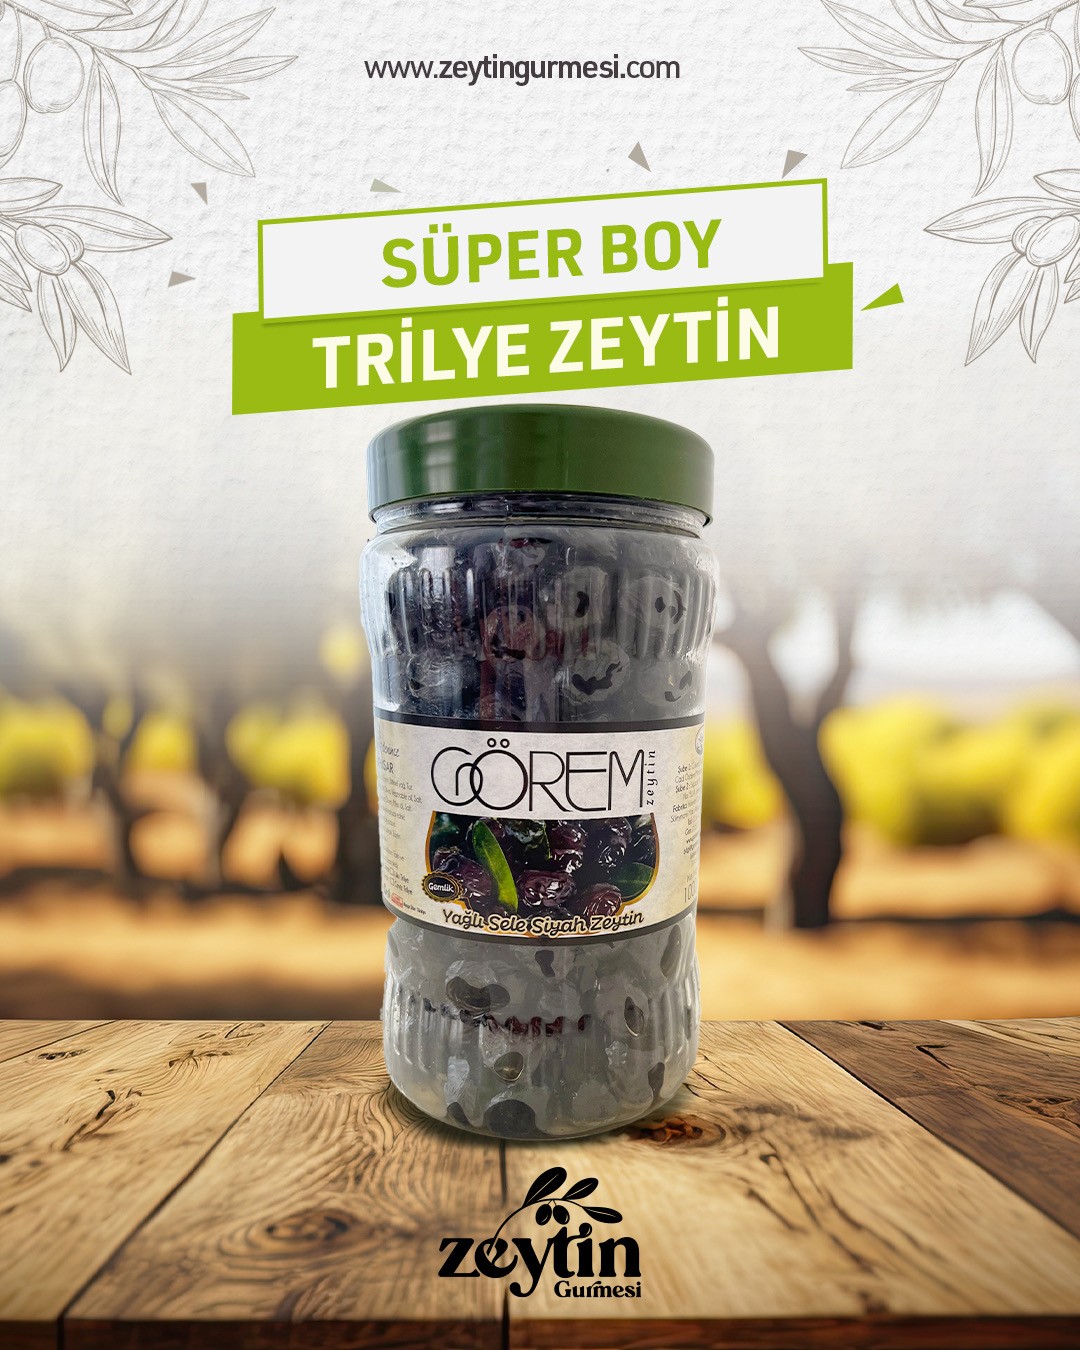 Süper Boy Trilye Zeytin ( Yağlı Sele) 1 kg